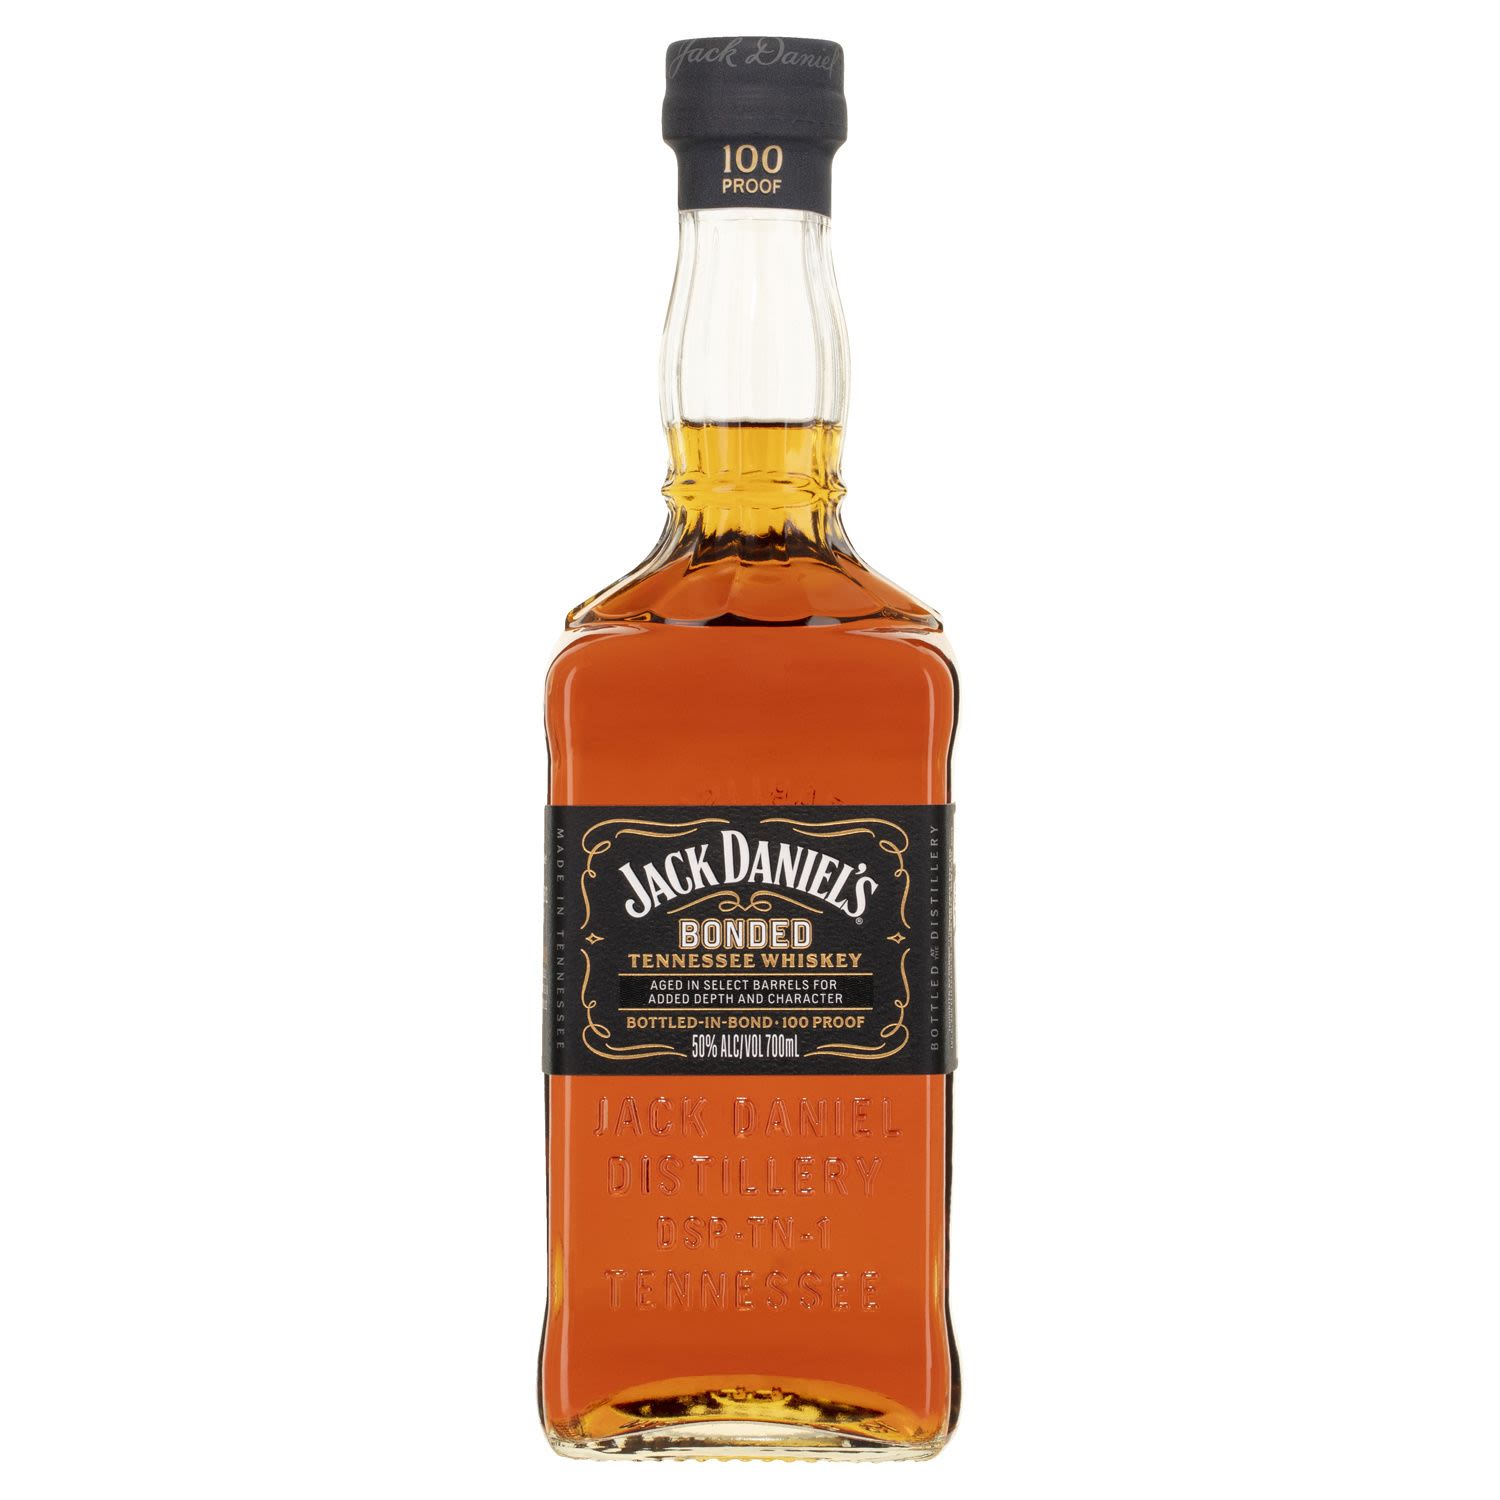 Jack Daniel's Bonded Tennessee Whisky 700mL Bottle